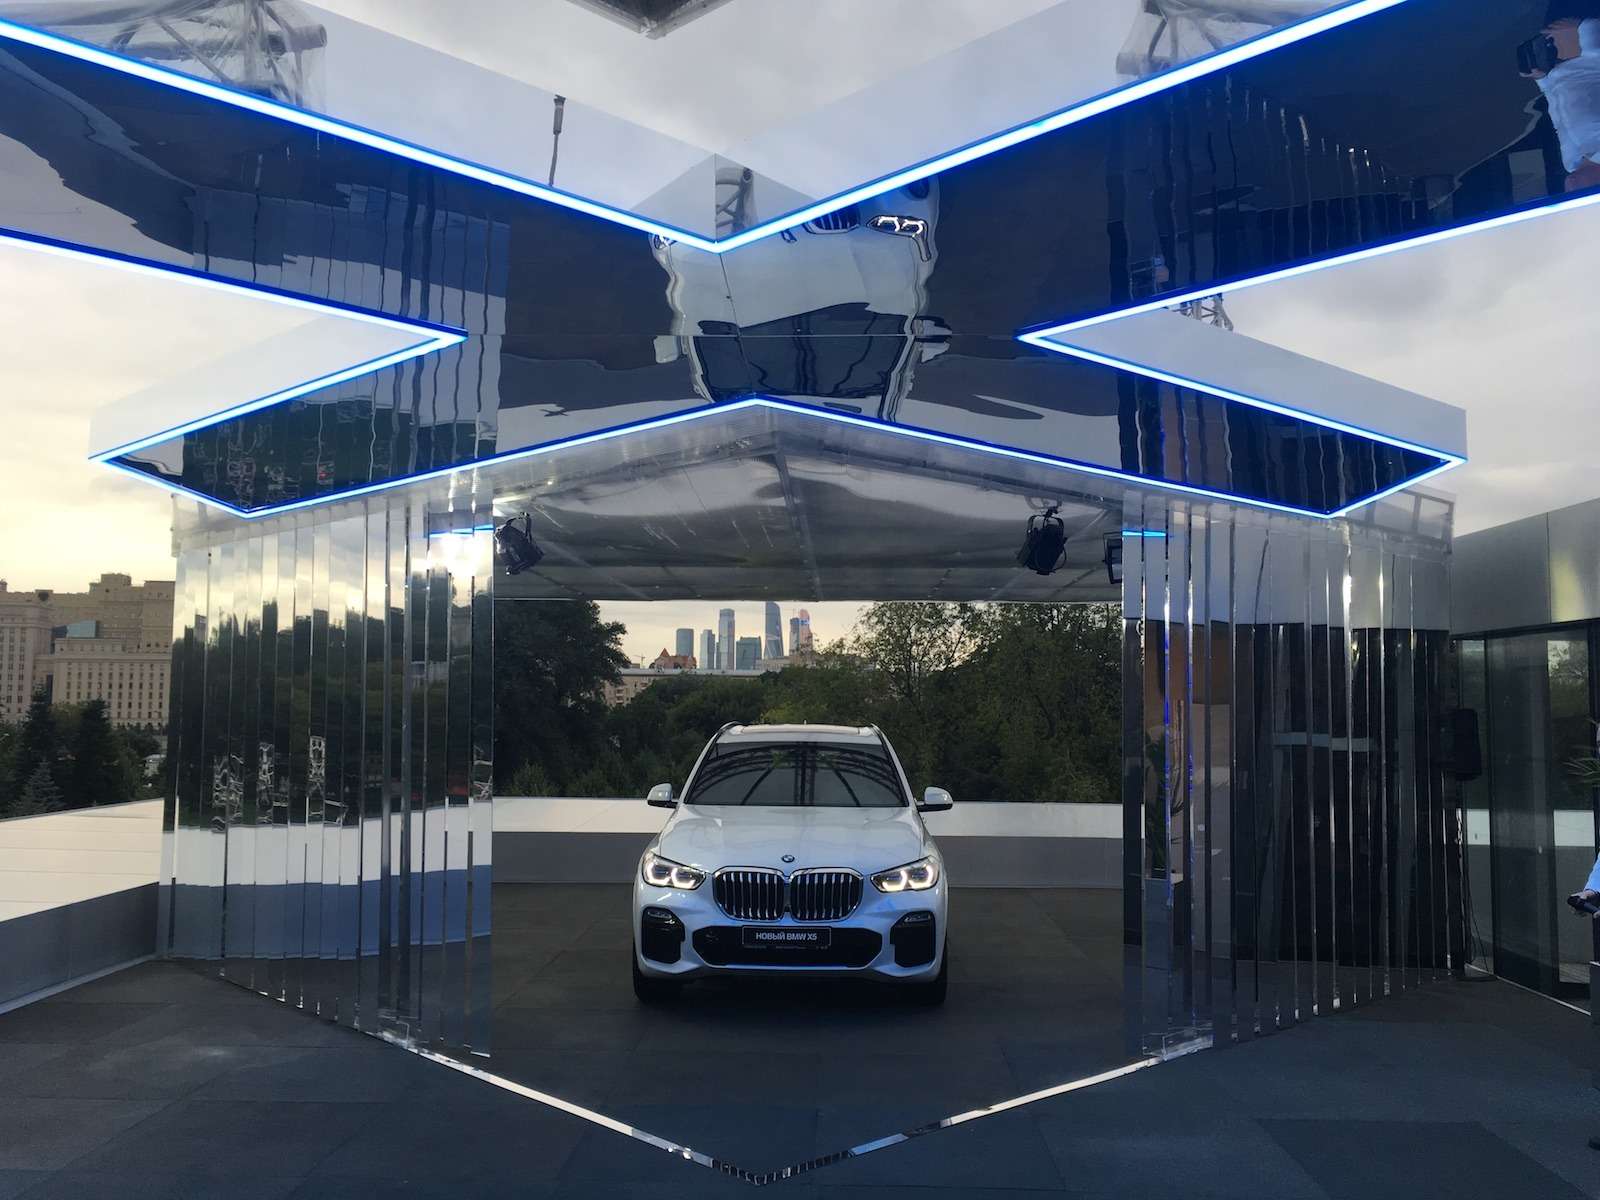 Абсолютно новый BMW X5 всплыл в Москве. Задолго до официальной премьеры! — фото 889840